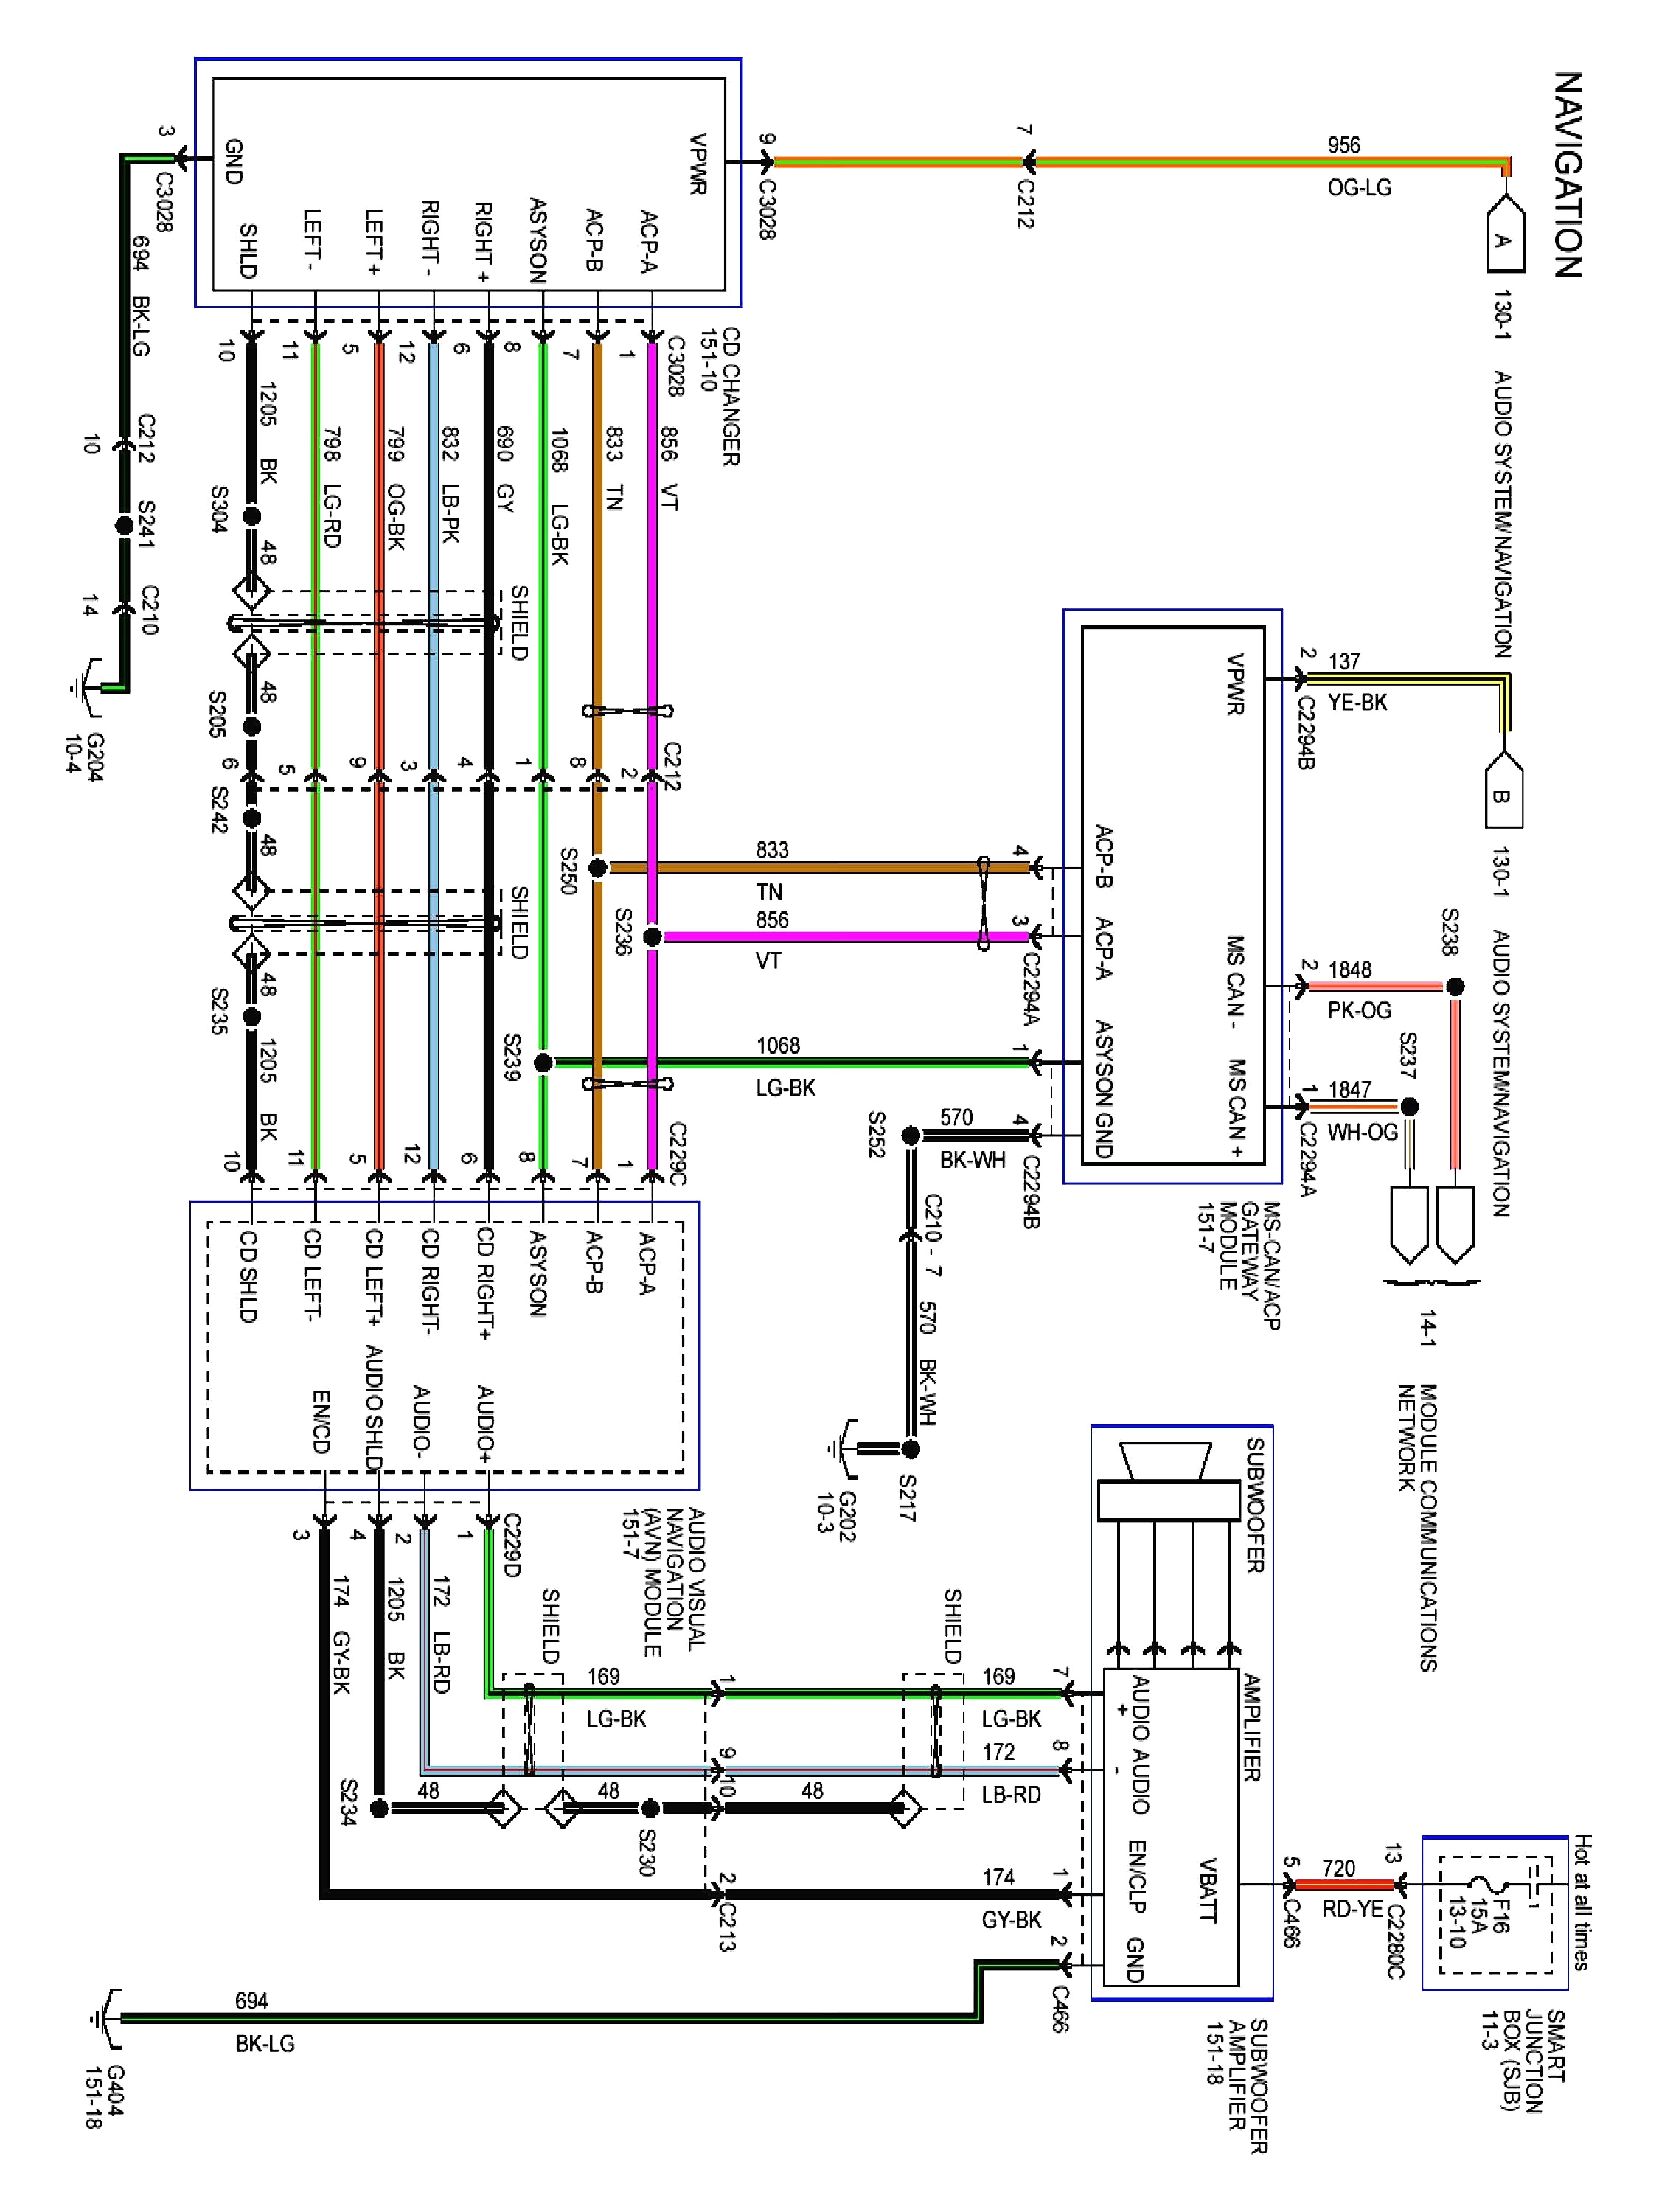 wiring diagram 2002 ford f 150 supercab wiring diagram mega 2002 ford f 150 wiring diagram